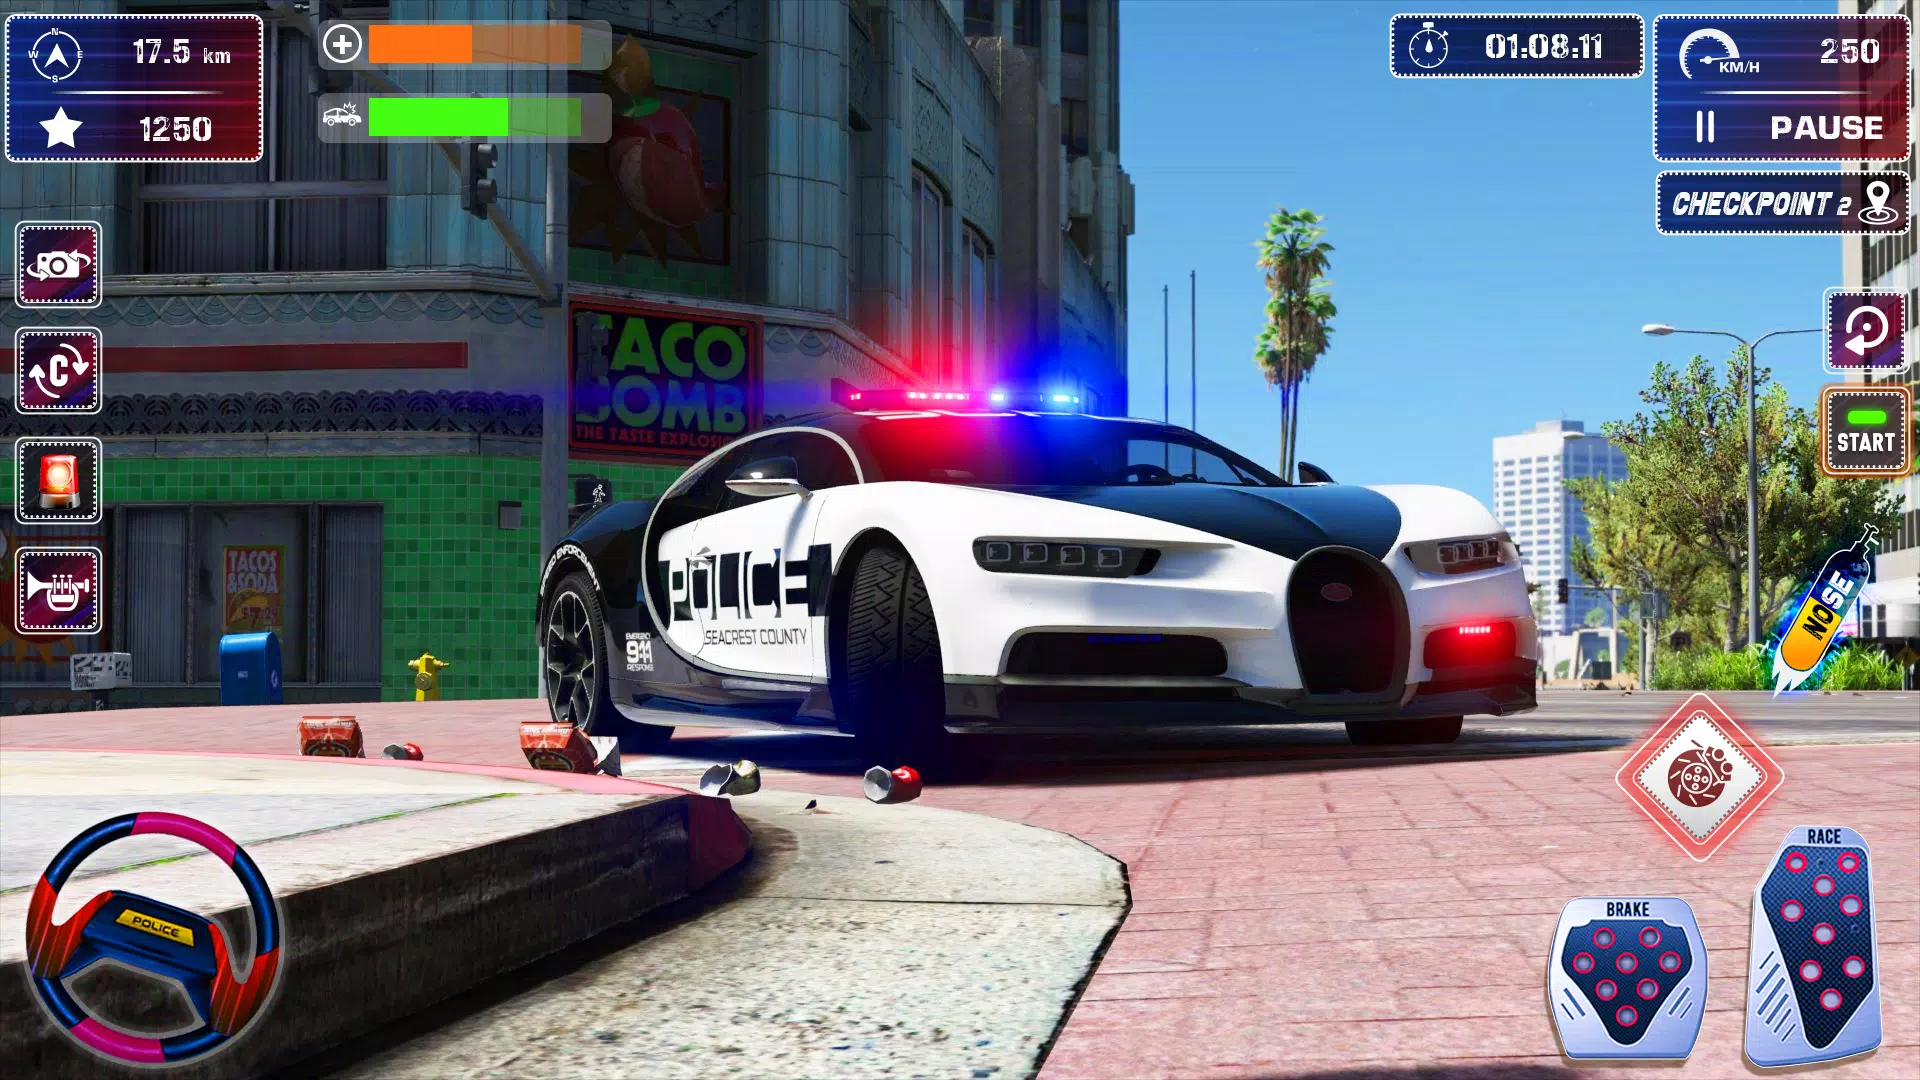 niemand herwinnen baas Politie auto parkeren spel 3d APK voor Android Download